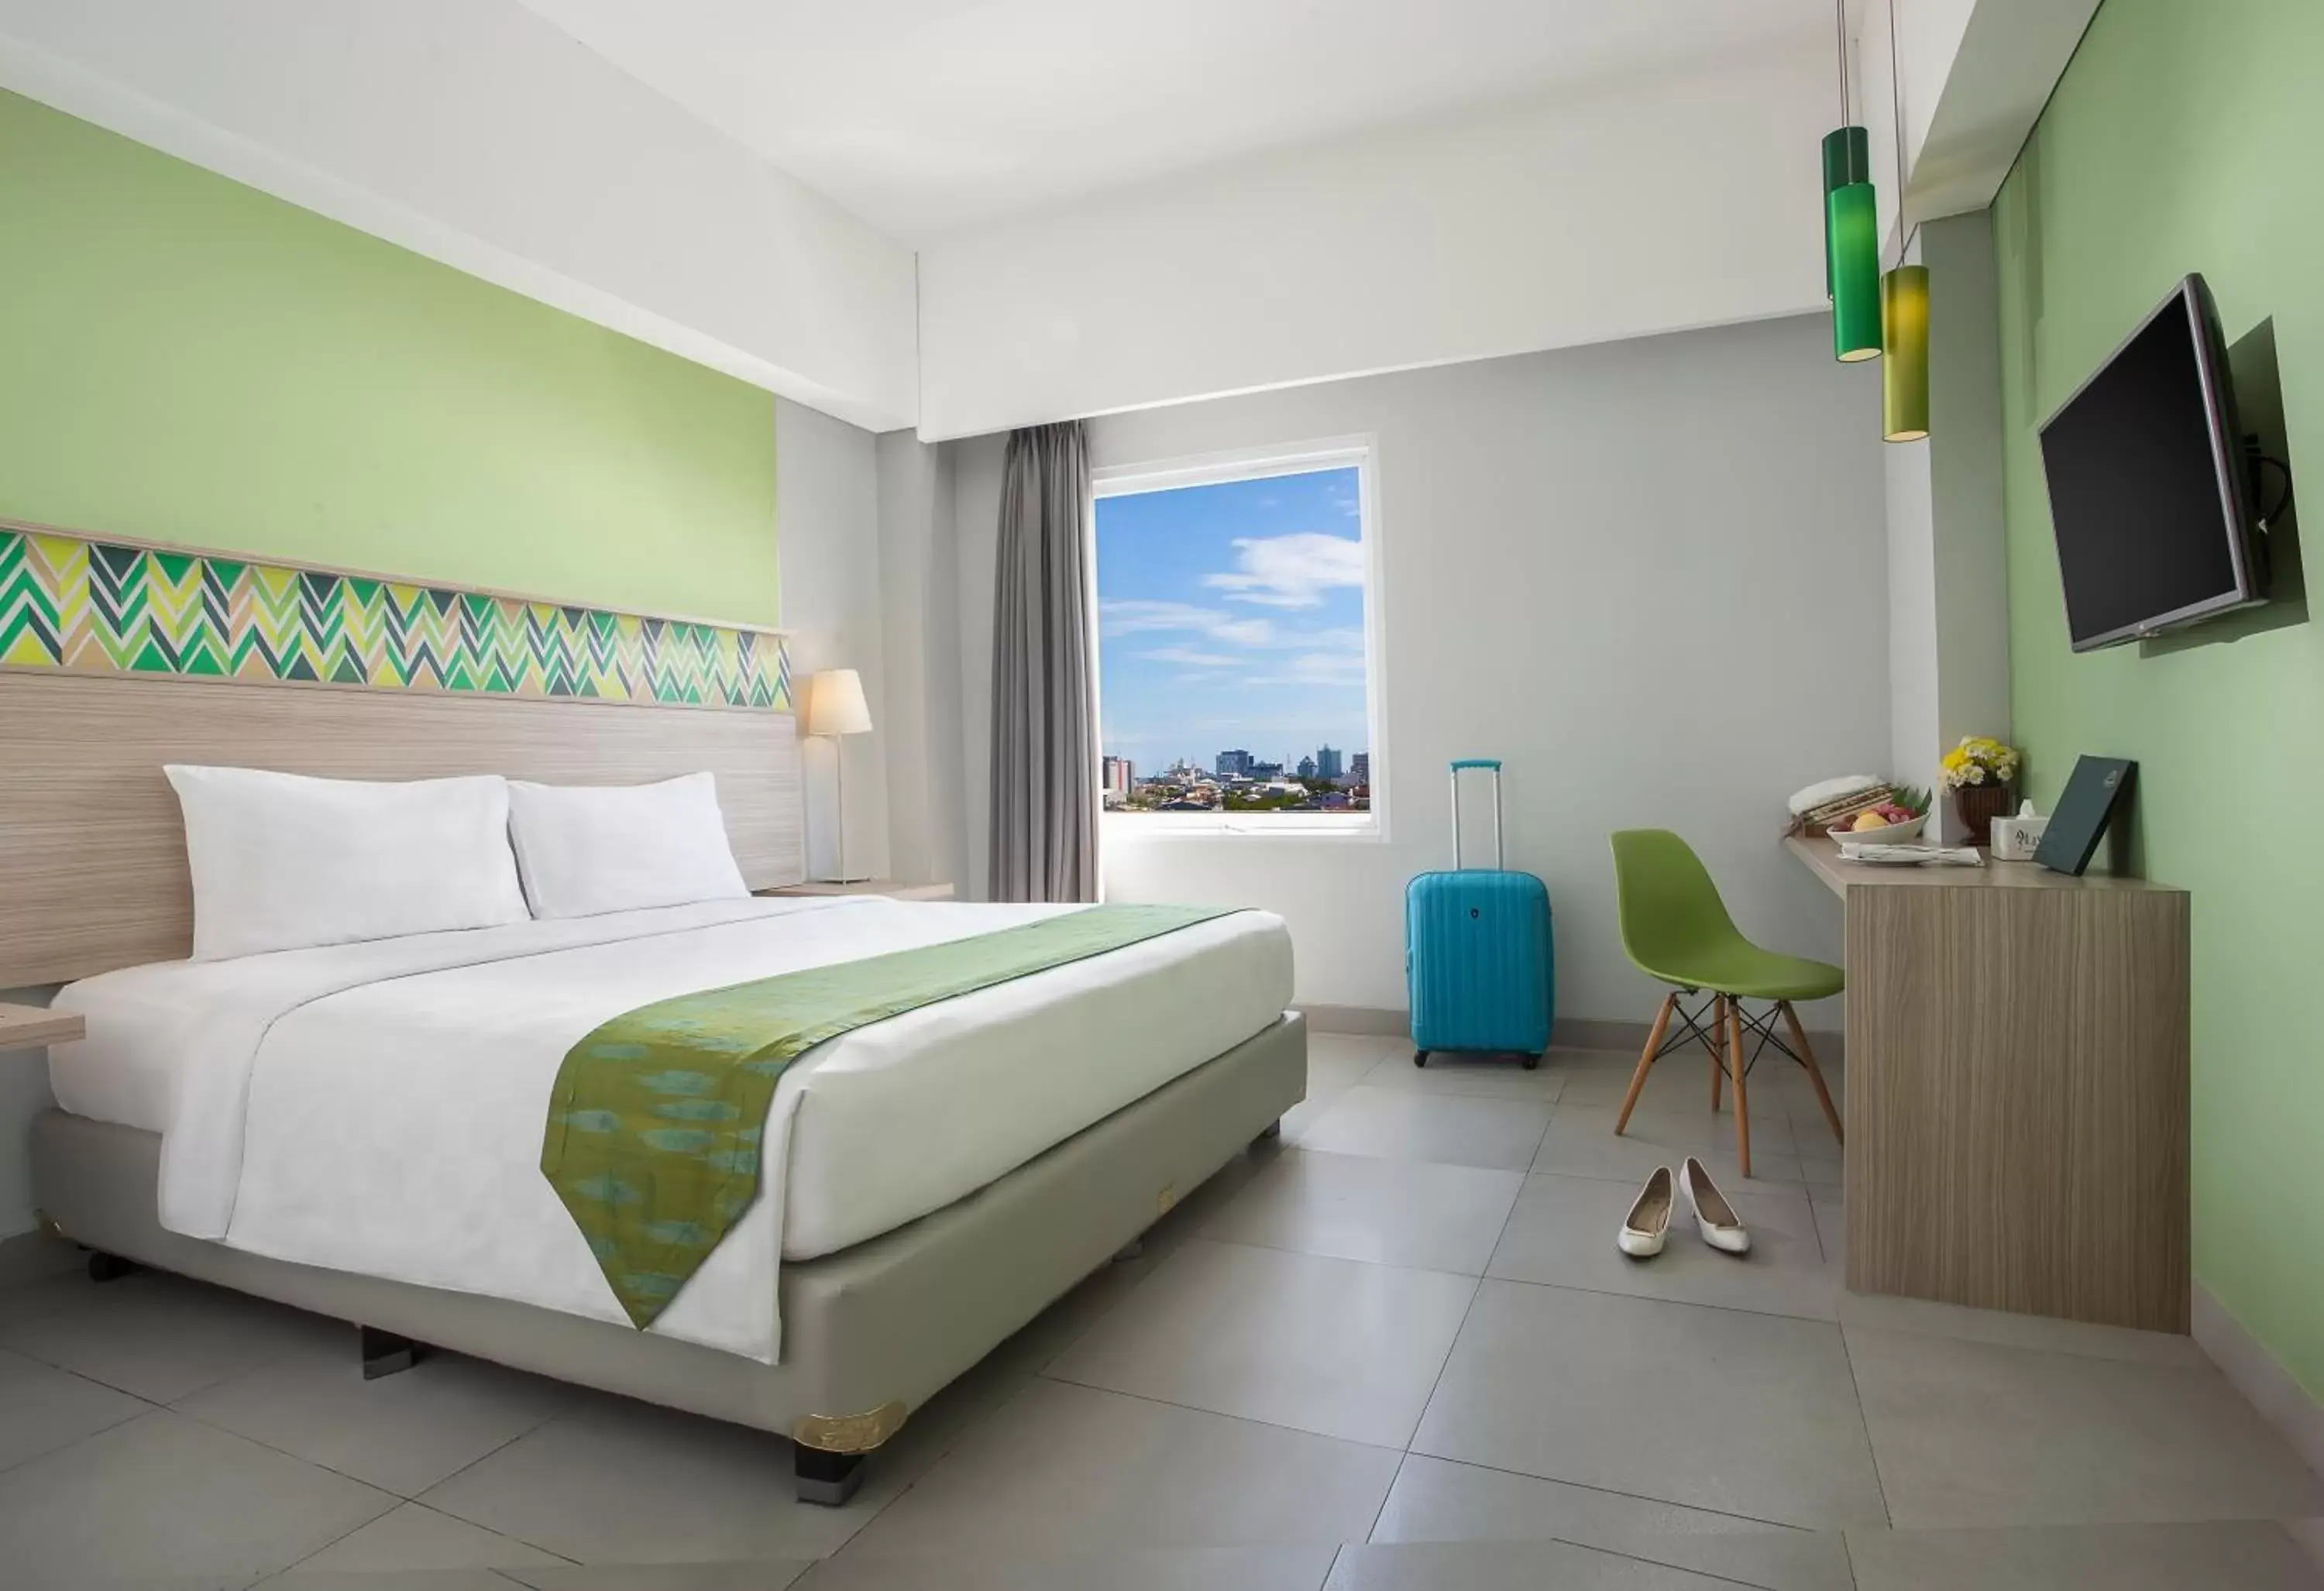 Bedroom in KHAS Makassar Hotel